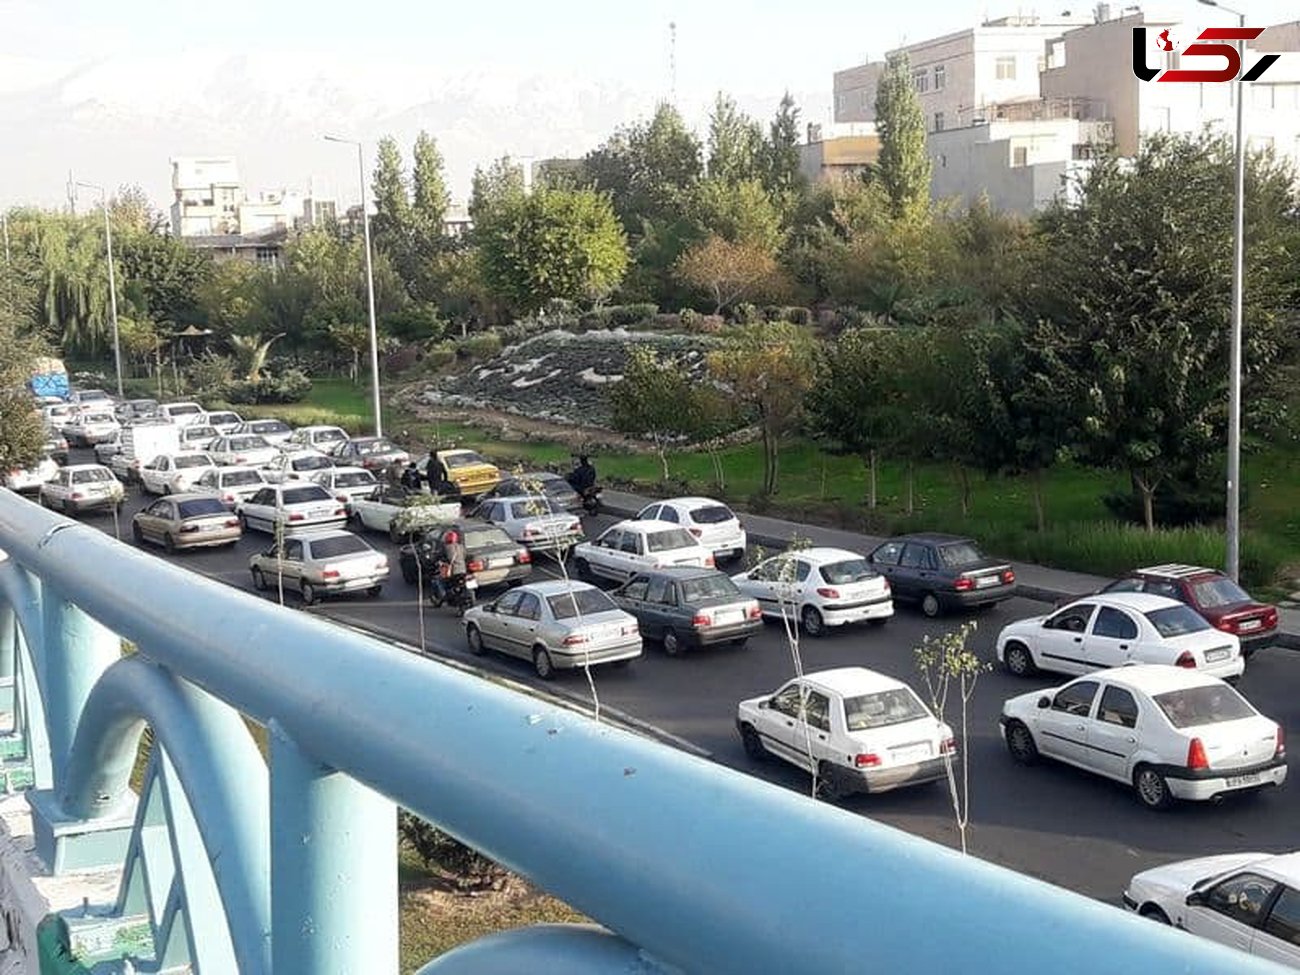  5 ثانیه دلهره آور برای رسیدن راننده اسنپ به صحنه خودکشی جوان تهرانی + عکس